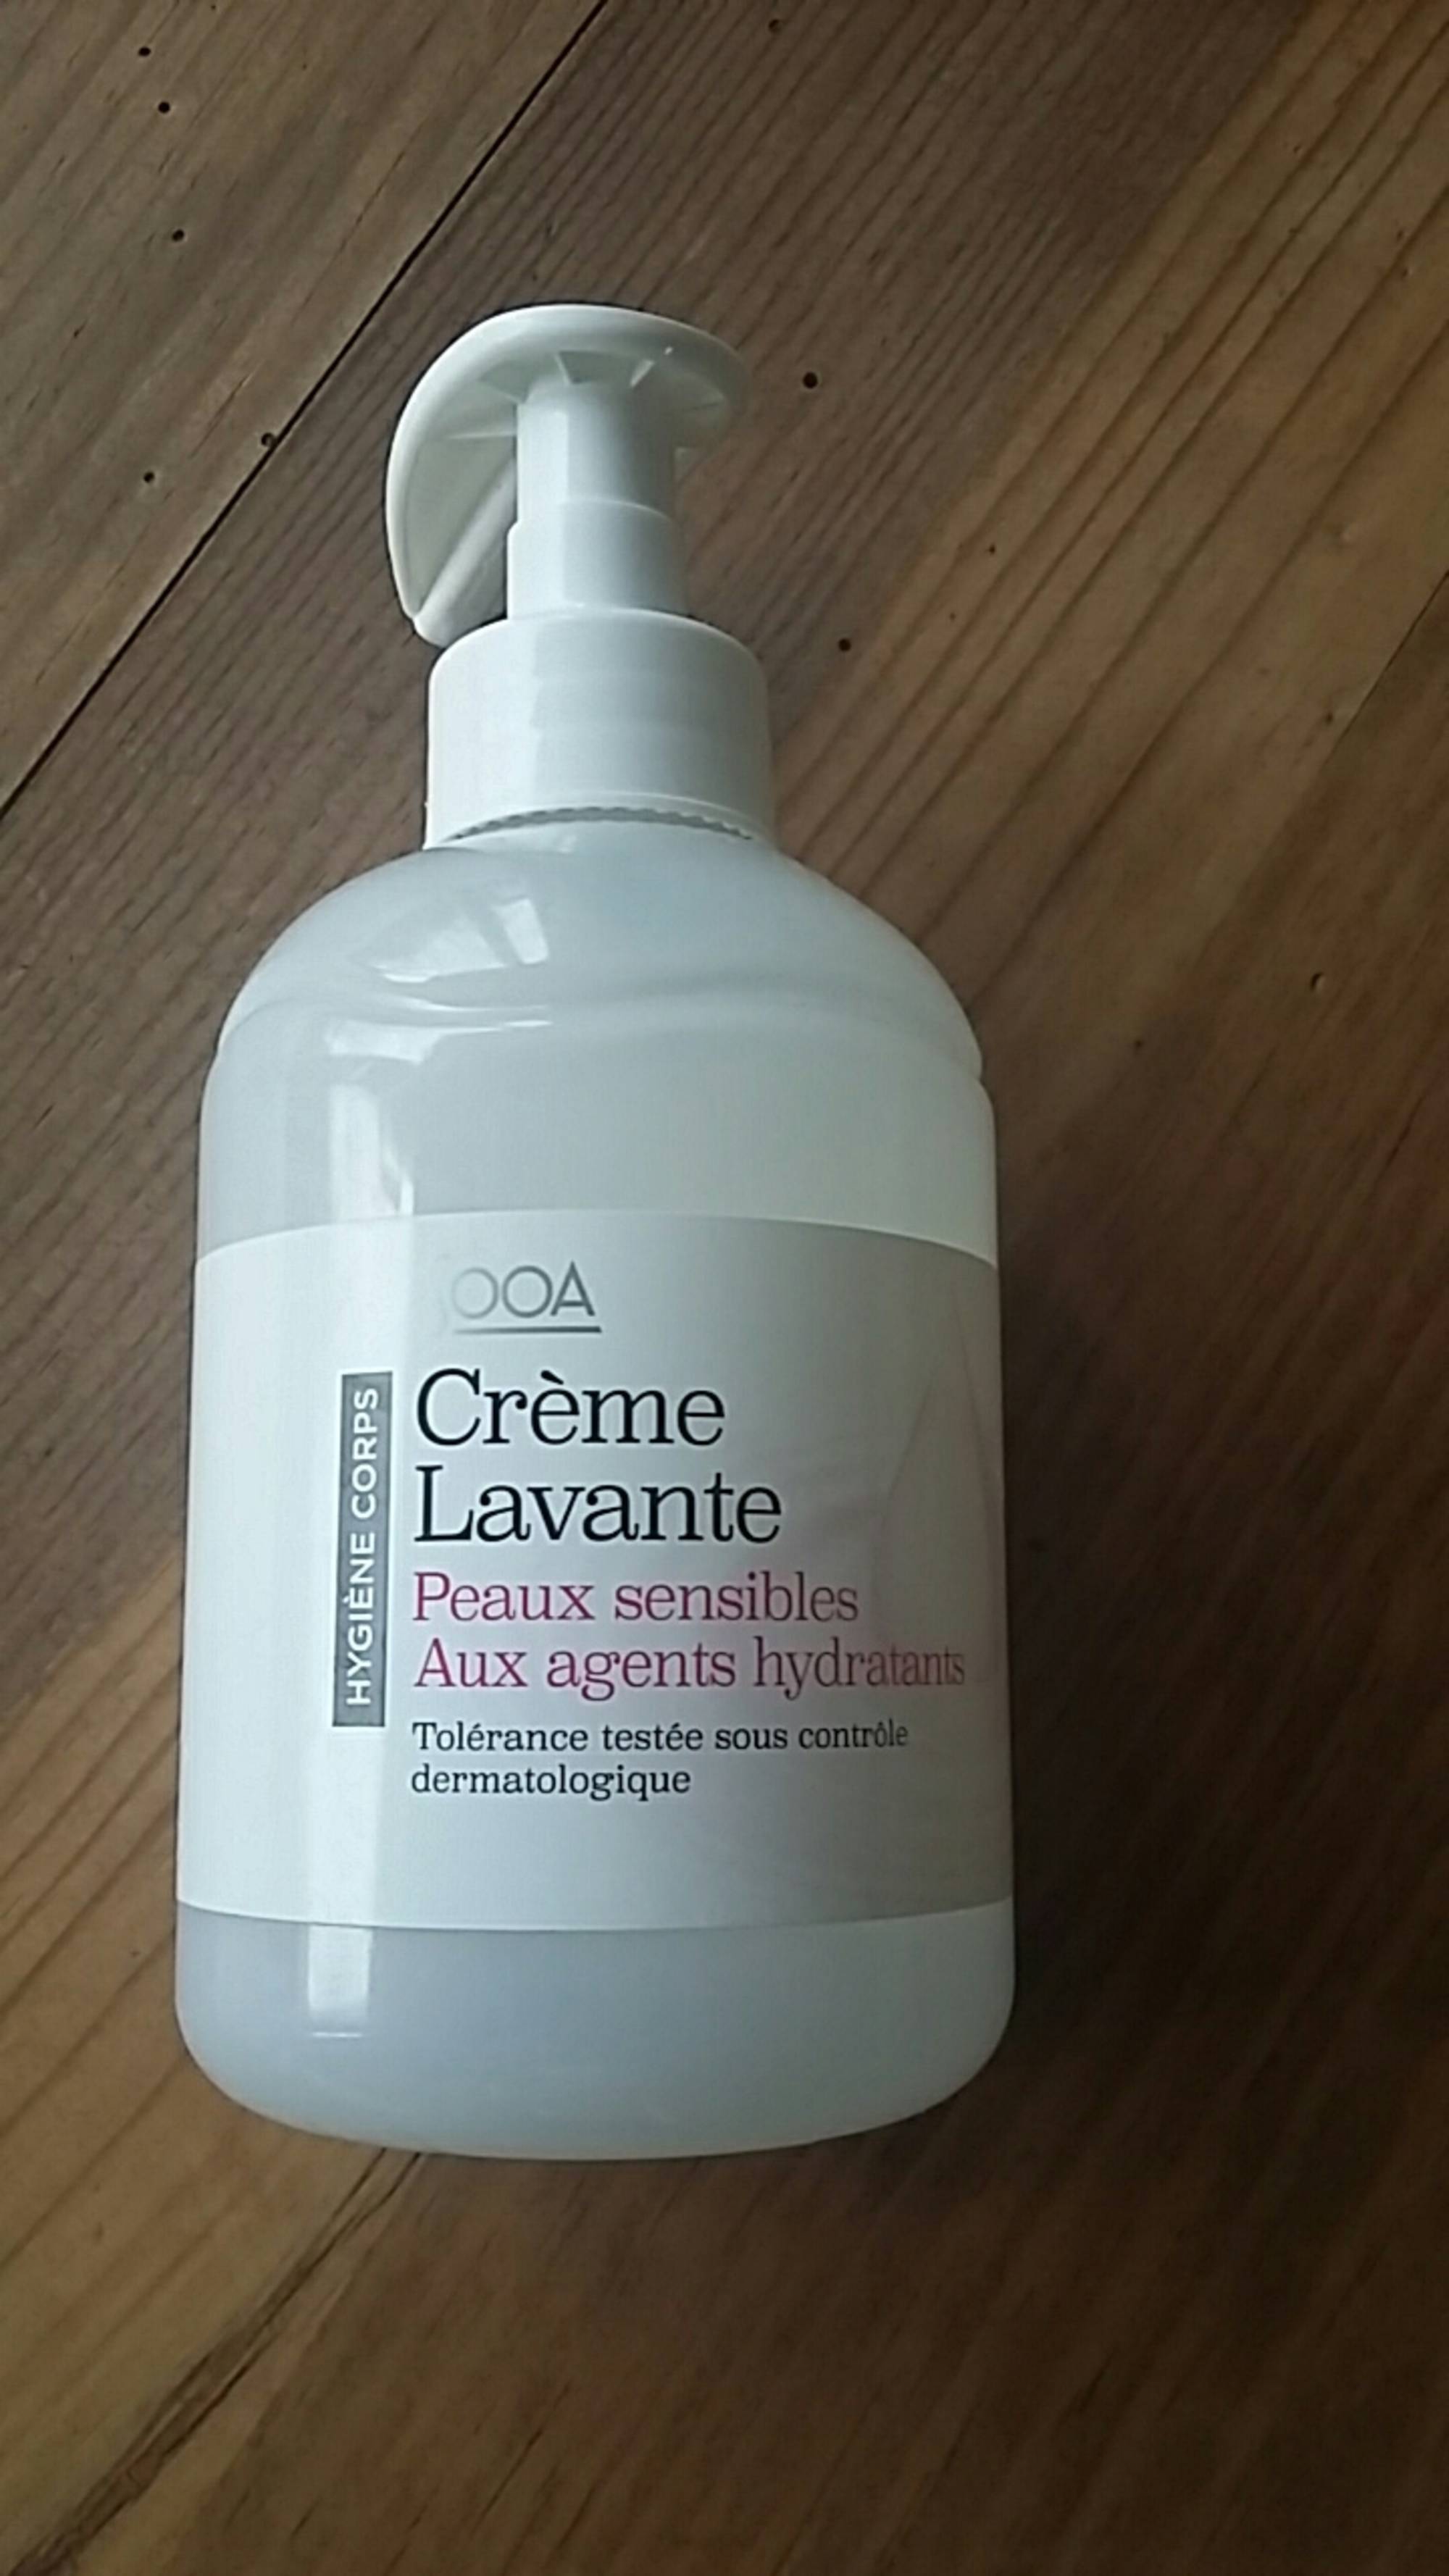 SOOA - Crème lavante - Hygiène corps